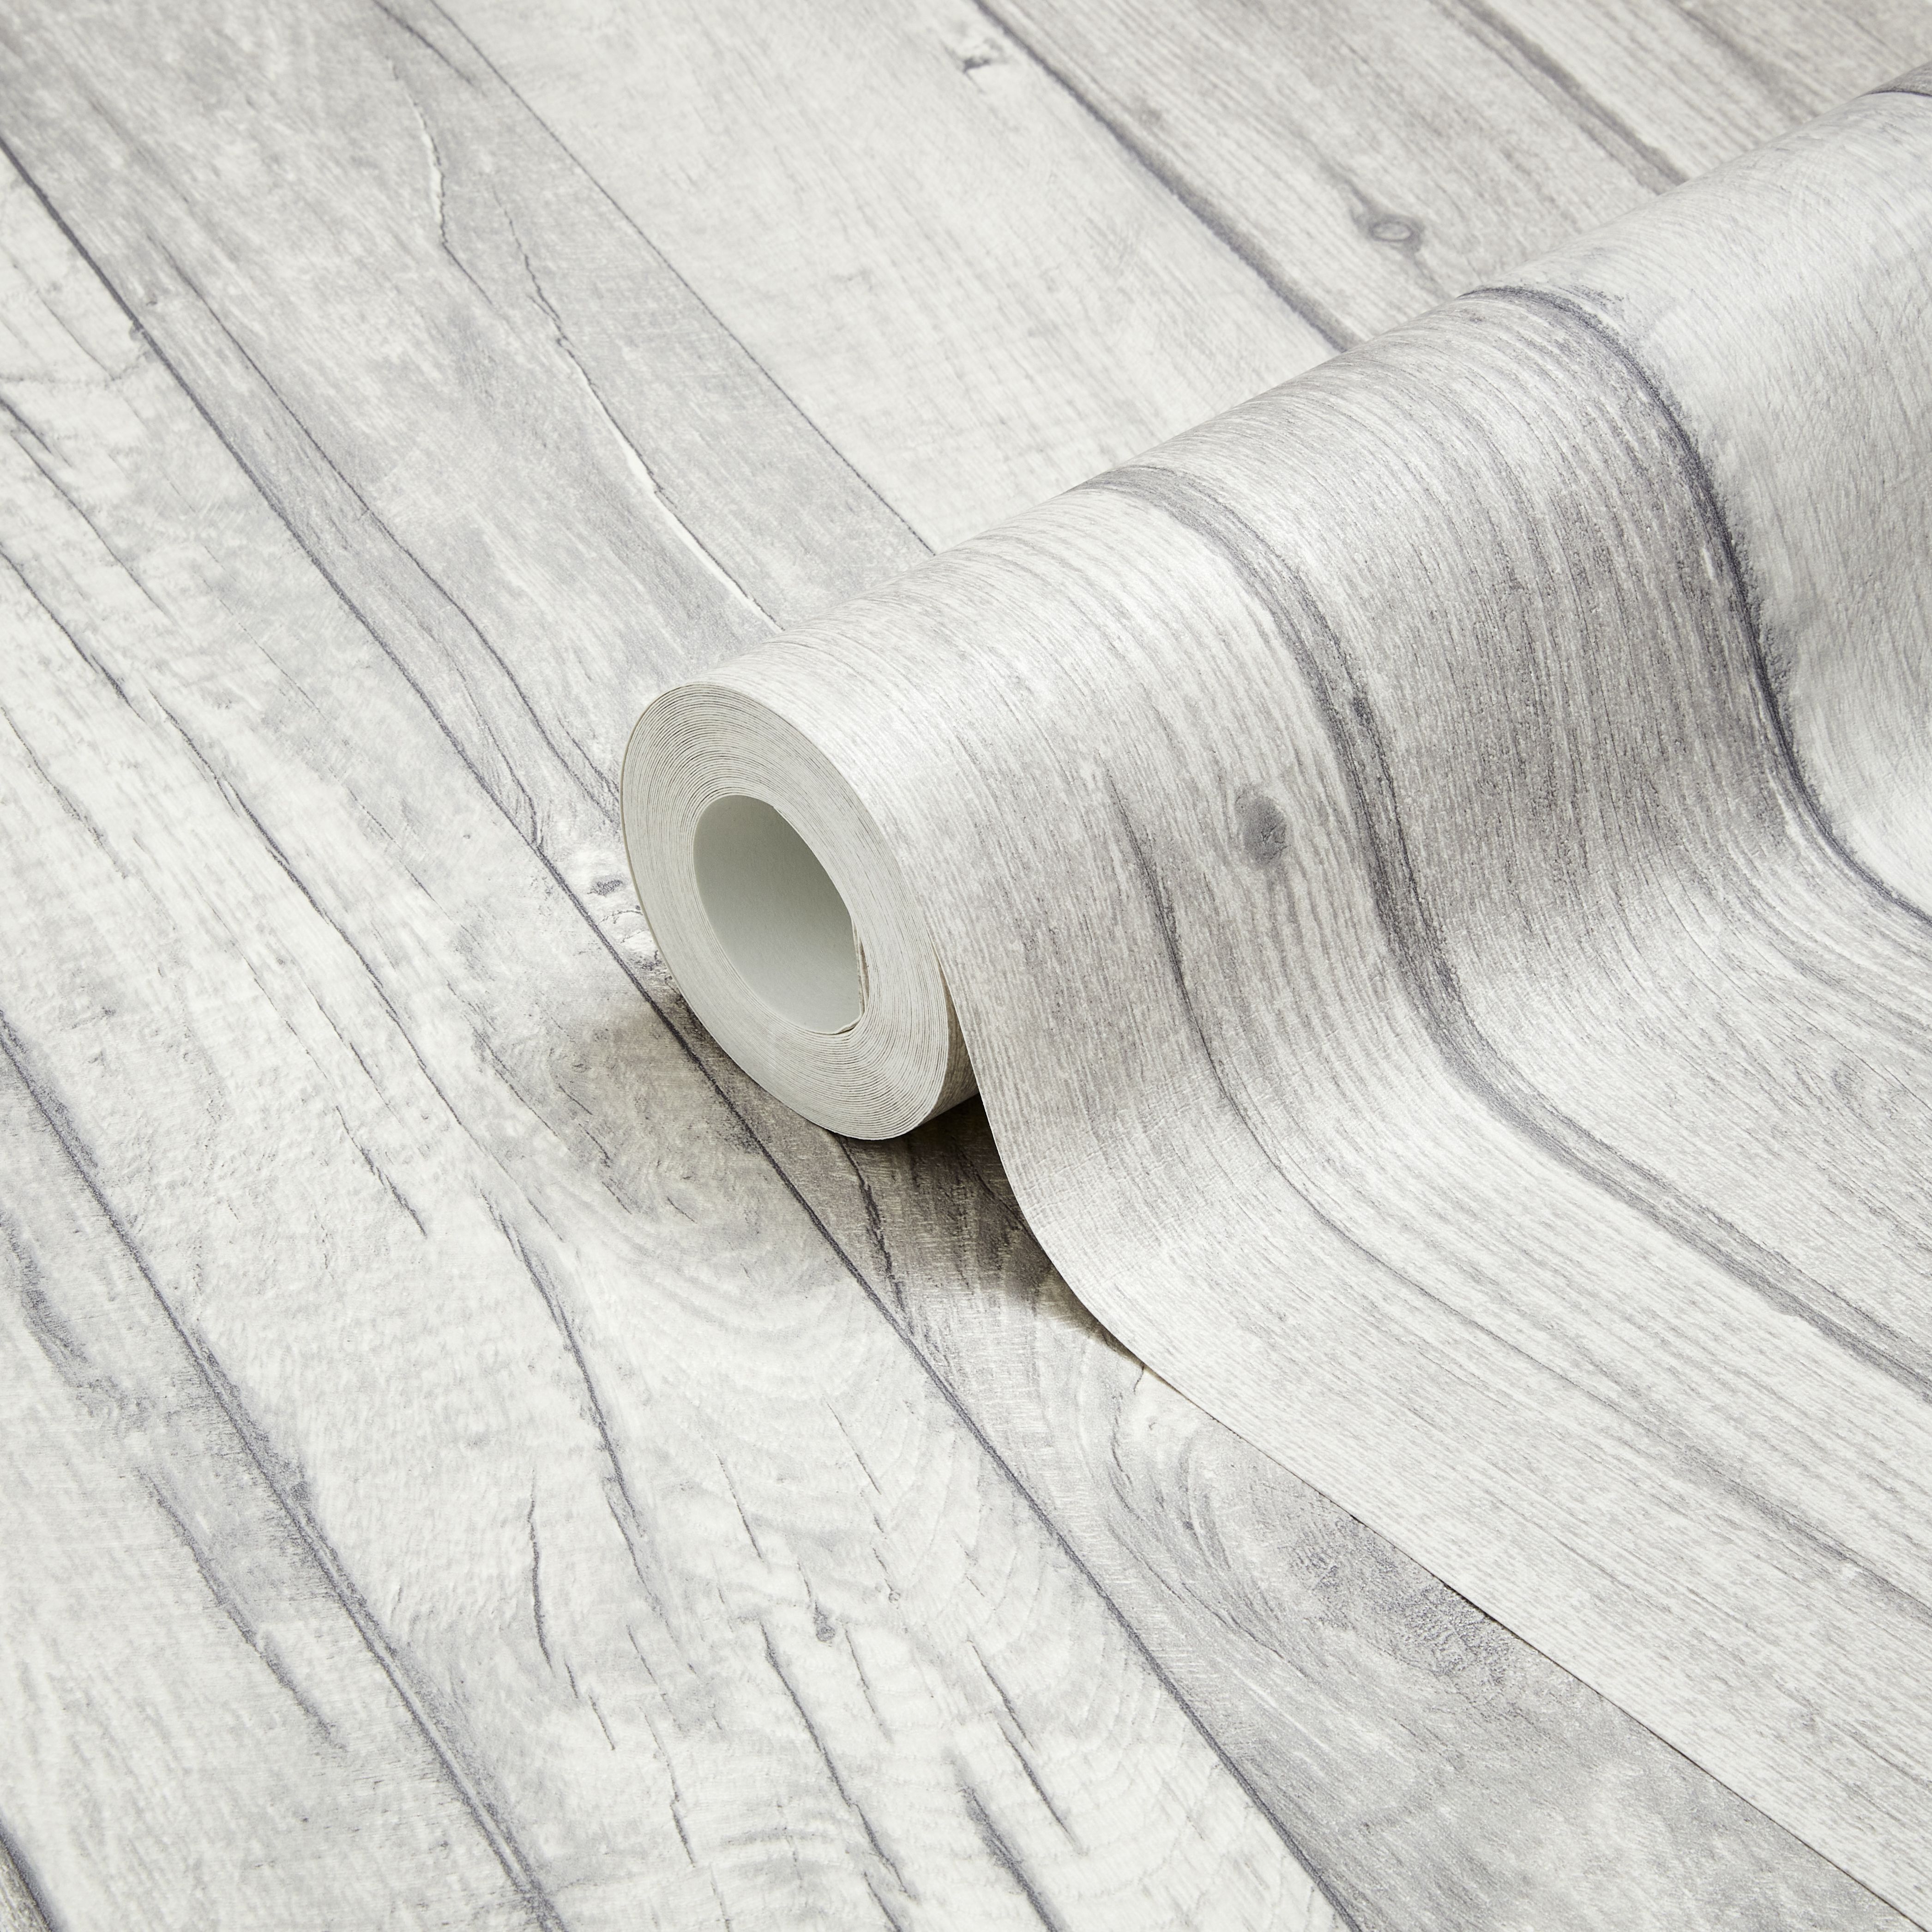 Giấy dán tường gỗ màu xám hiệu ứng mịn Ideco Home Ideco: Với giấy dán tường gỗ màu xám hiệu ứng mịn của Ideco Home Ideco, bạn sẽ tận hưởng không gian sống hoàn toàn mới mẻ, trang trí hiện đại và đầy lôi cuốn. Tông màu xám nhẹ nhàng kết hợp cùng chất liệu gỗ tạo nên một phong cách tinh tế và sang trọng cho ngôi nhà của bạn. Hãy xem ngay hình ảnh liên quan để cảm nhận thêm sự đẳng cấp của sản phẩm này.